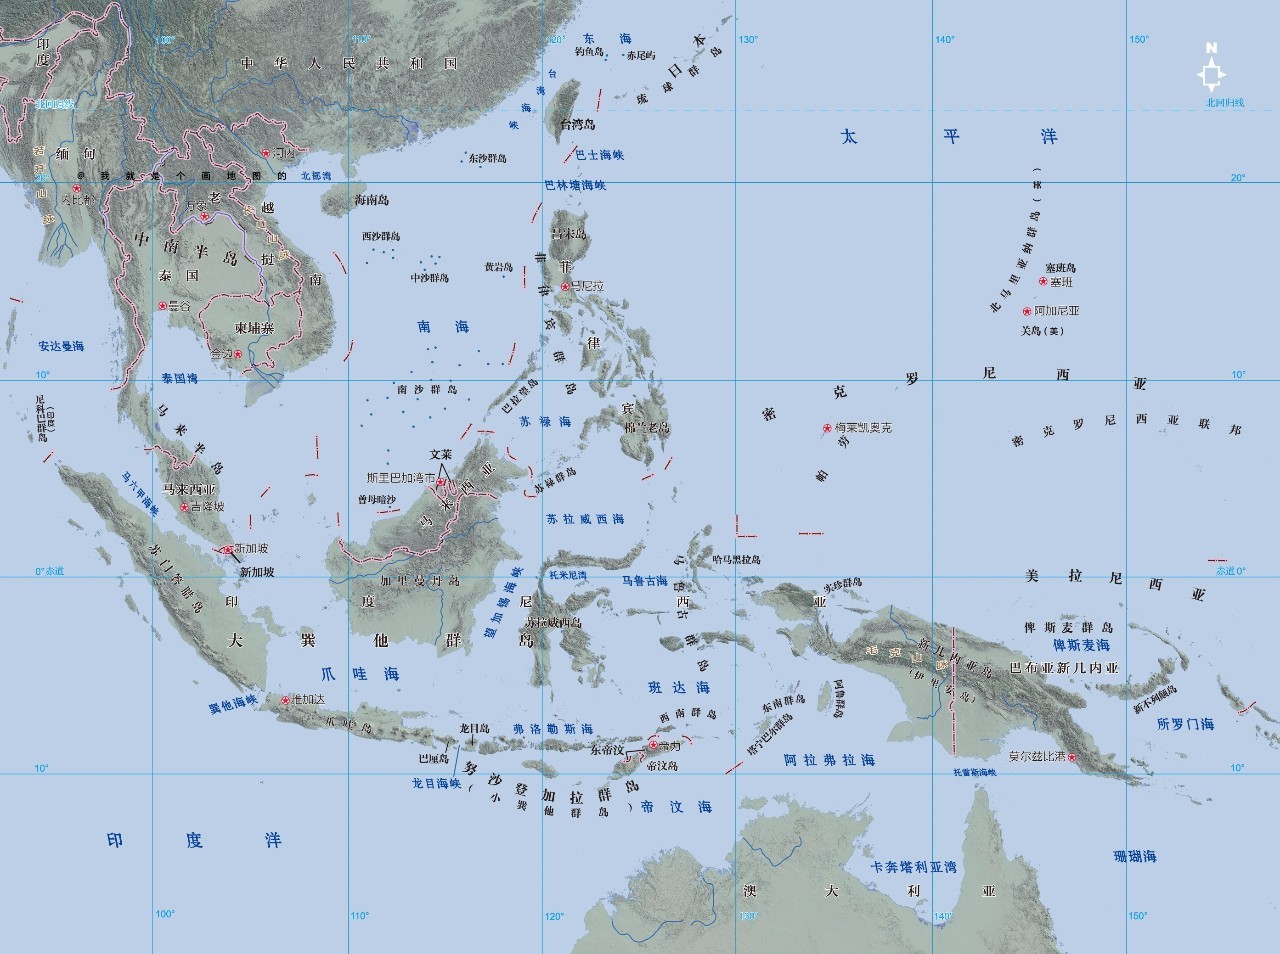 需要说明的是,东南角的新几内亚岛目前虽然被印尼占据了一半,但在